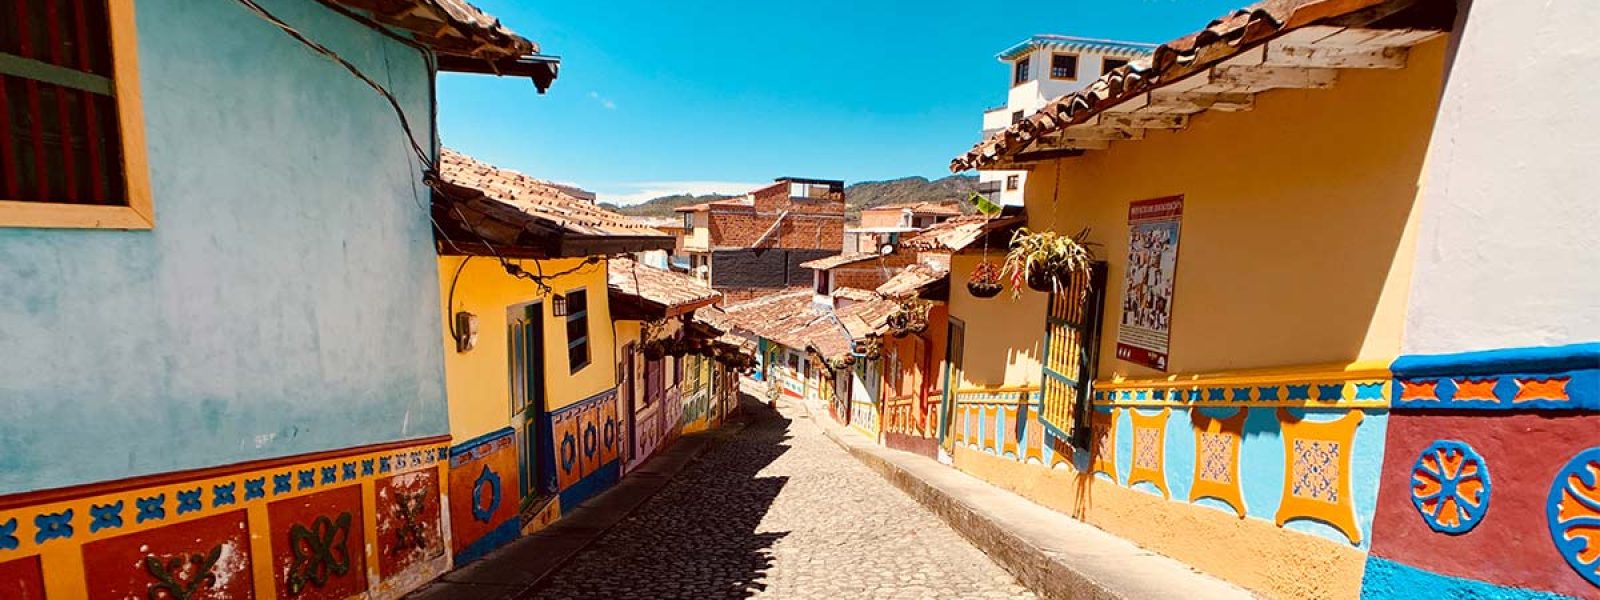 Straatje van gekleurde huizen in Colombia